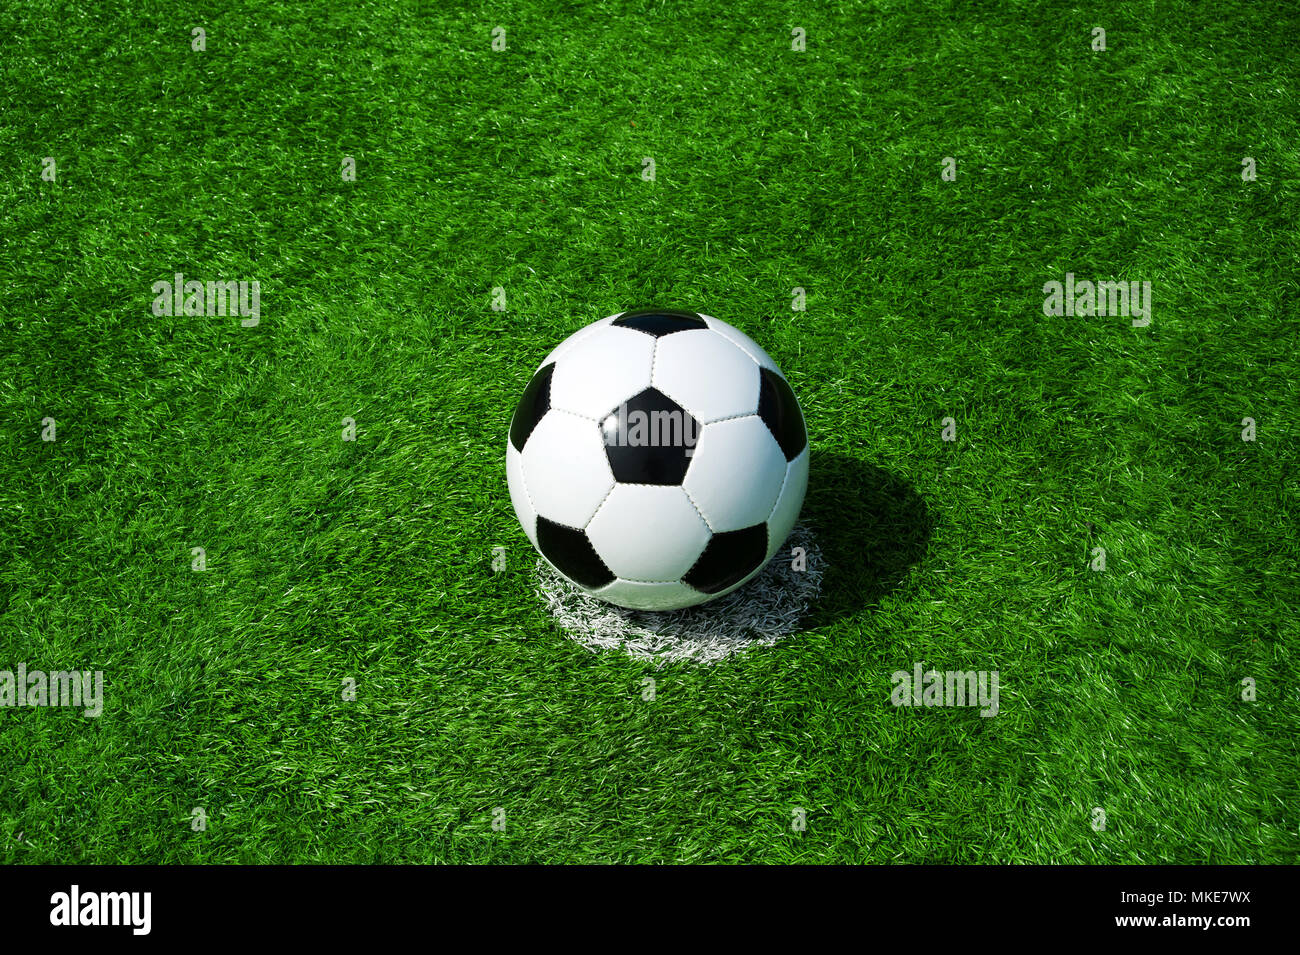 Pallone da calcio classico bianco e nero sulla pena di macchia verde erba artificiale Foto Stock